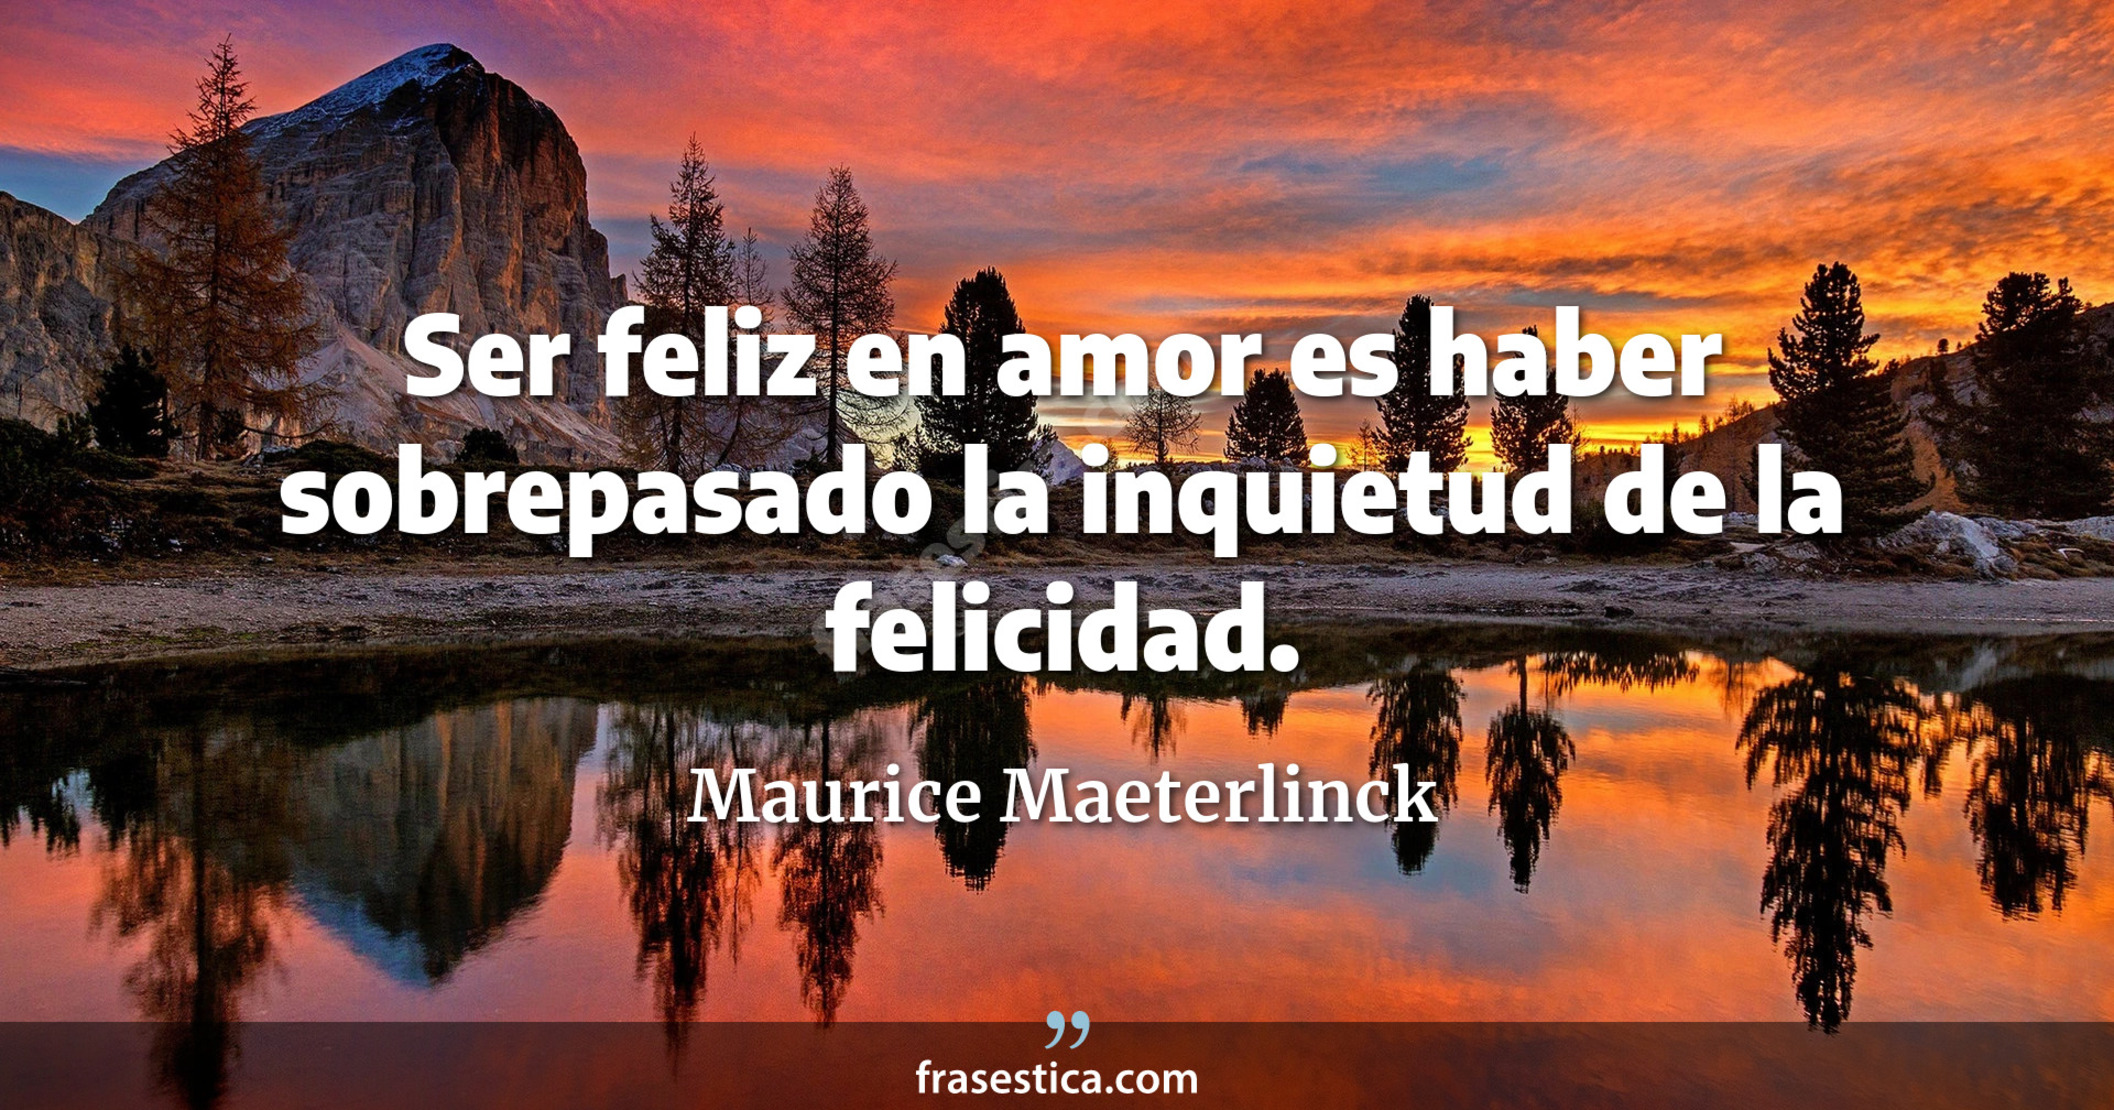 Ser feliz en amor es haber sobrepasado la inquietud de la felicidad. - Maurice Maeterlinck